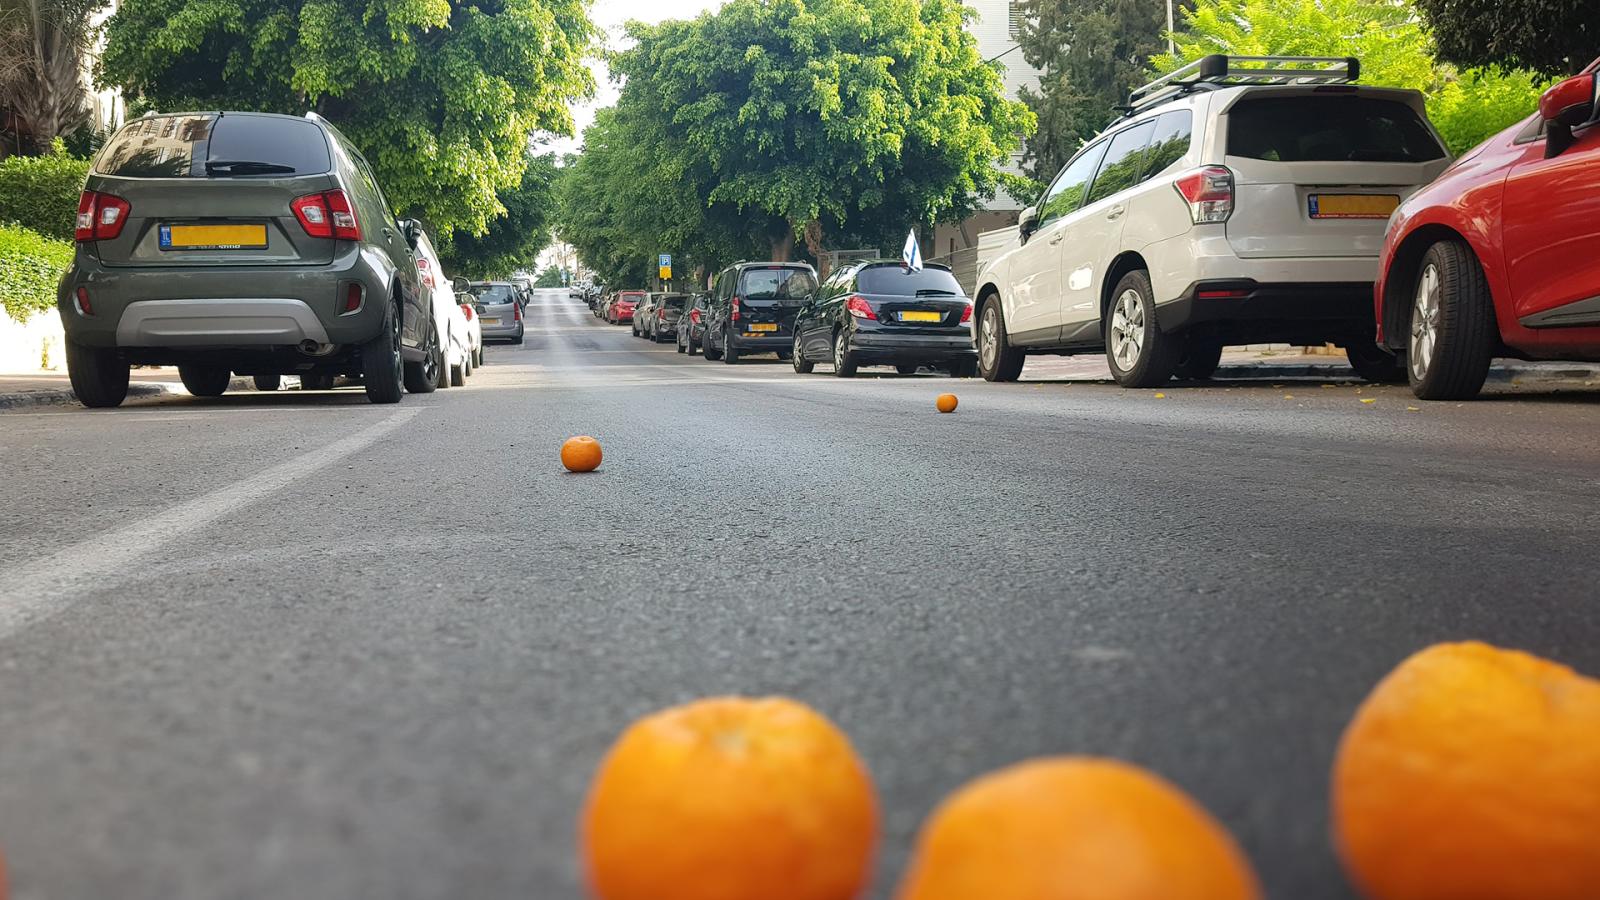 άγνωστοι βάζουν πορτοκάλια στον δρόμο -γιατί δεν πρέπει να τα πατήσεις με το αυτοκίνητό σου